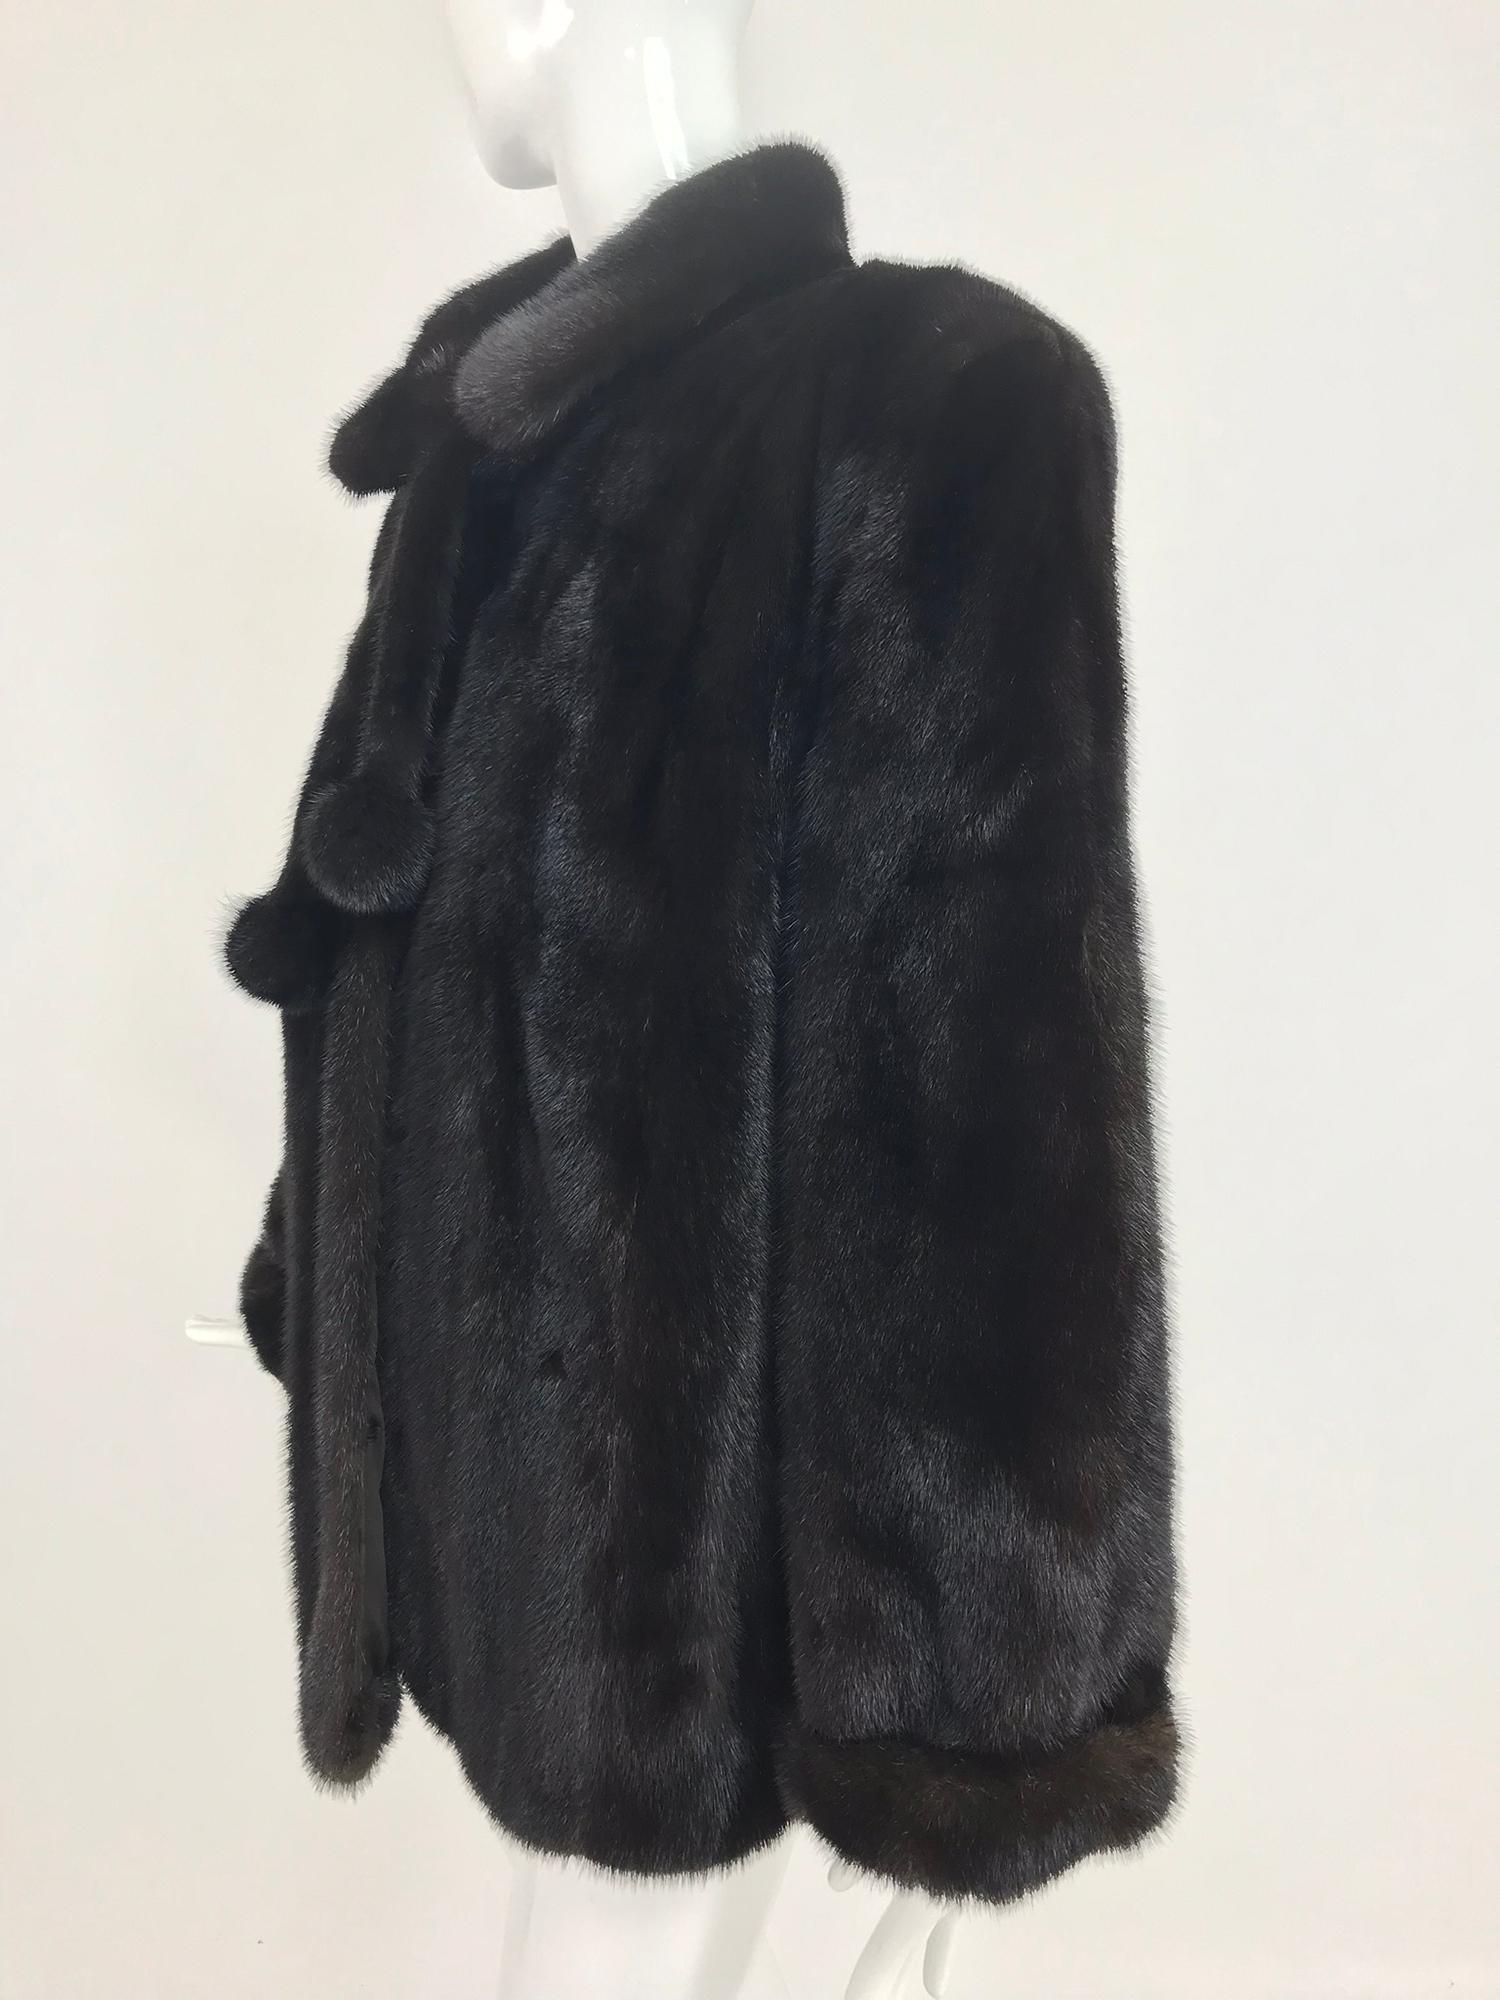 Women's Nieman Marcus Black Mink Fur Jacket with Pom Pom Ties